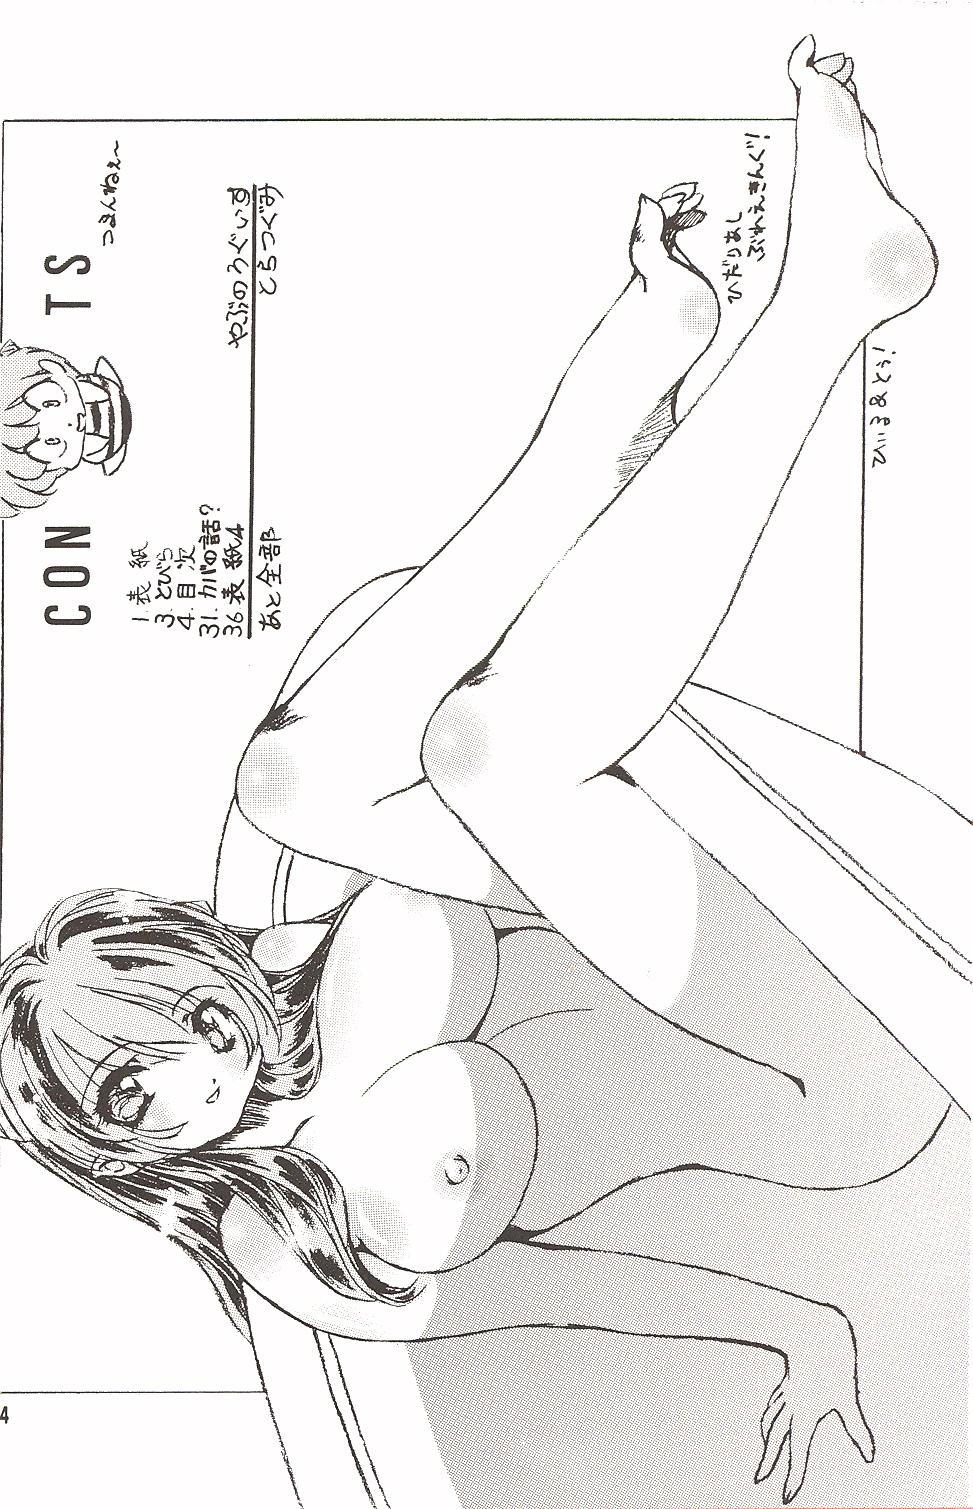 Backshots Naked Dream Lunatic Volume 3 - Urusei yatsura Guys - Page 3